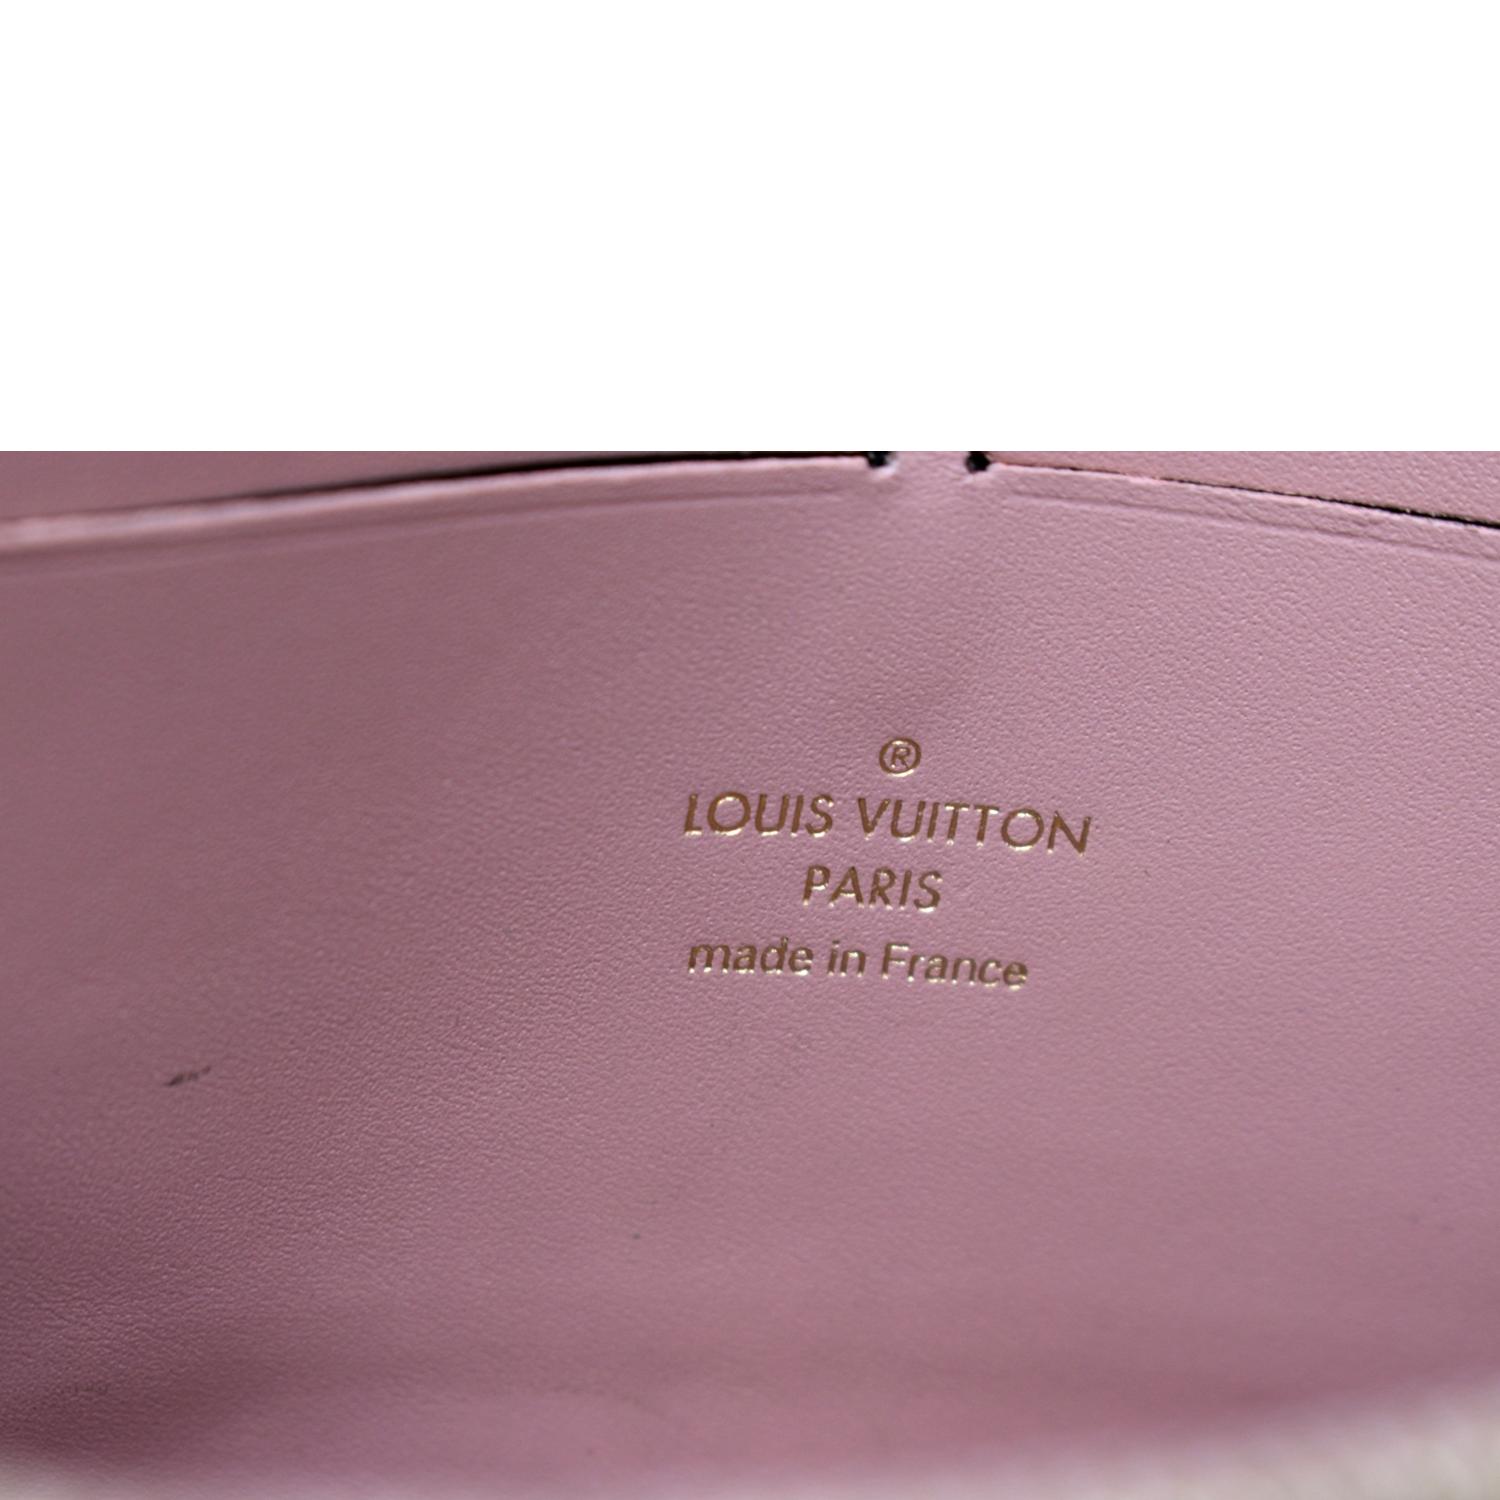 gucci purple leather croisette